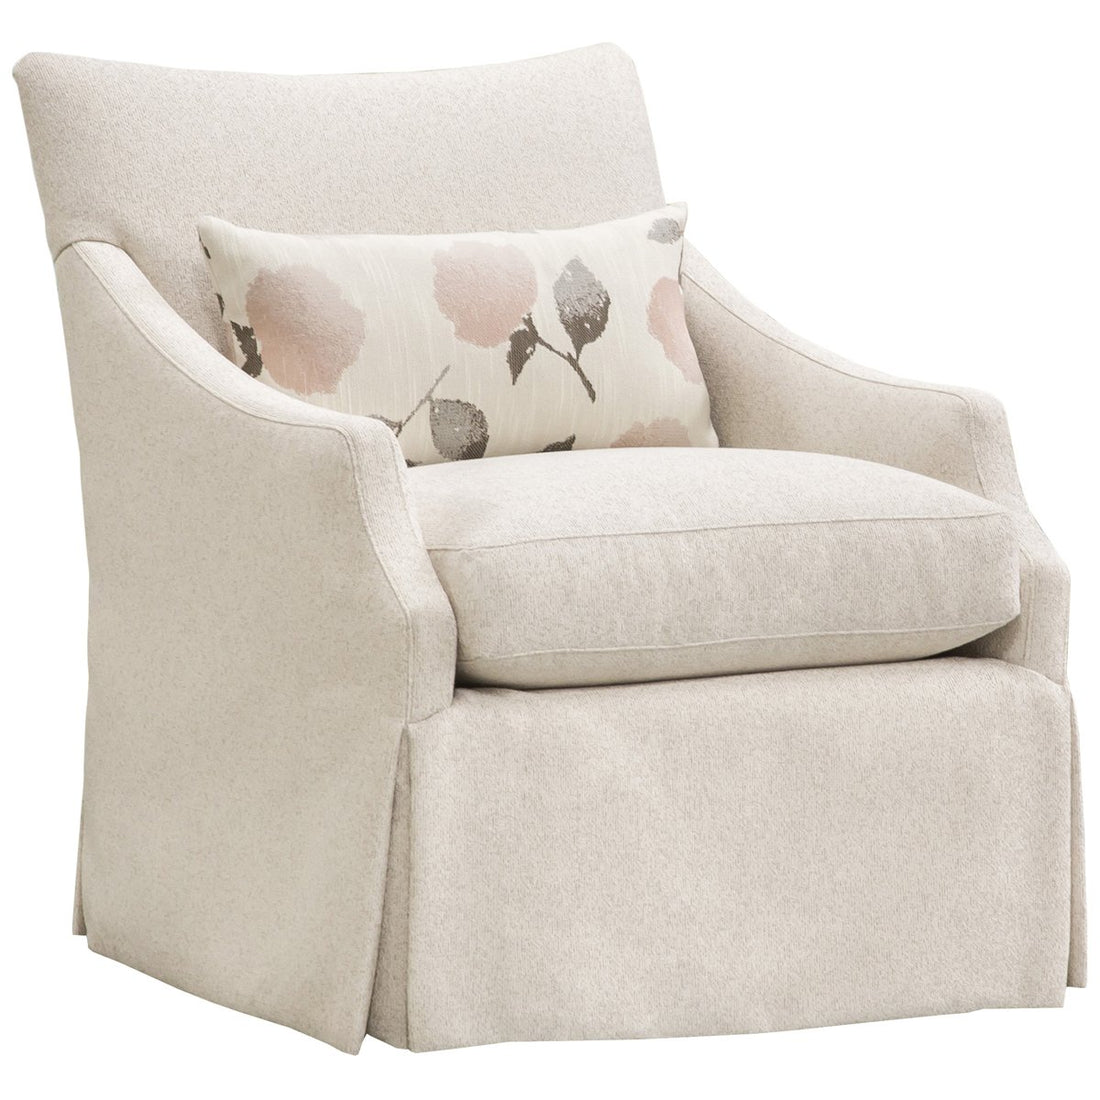 Vanguard Furniture Gulley Chair